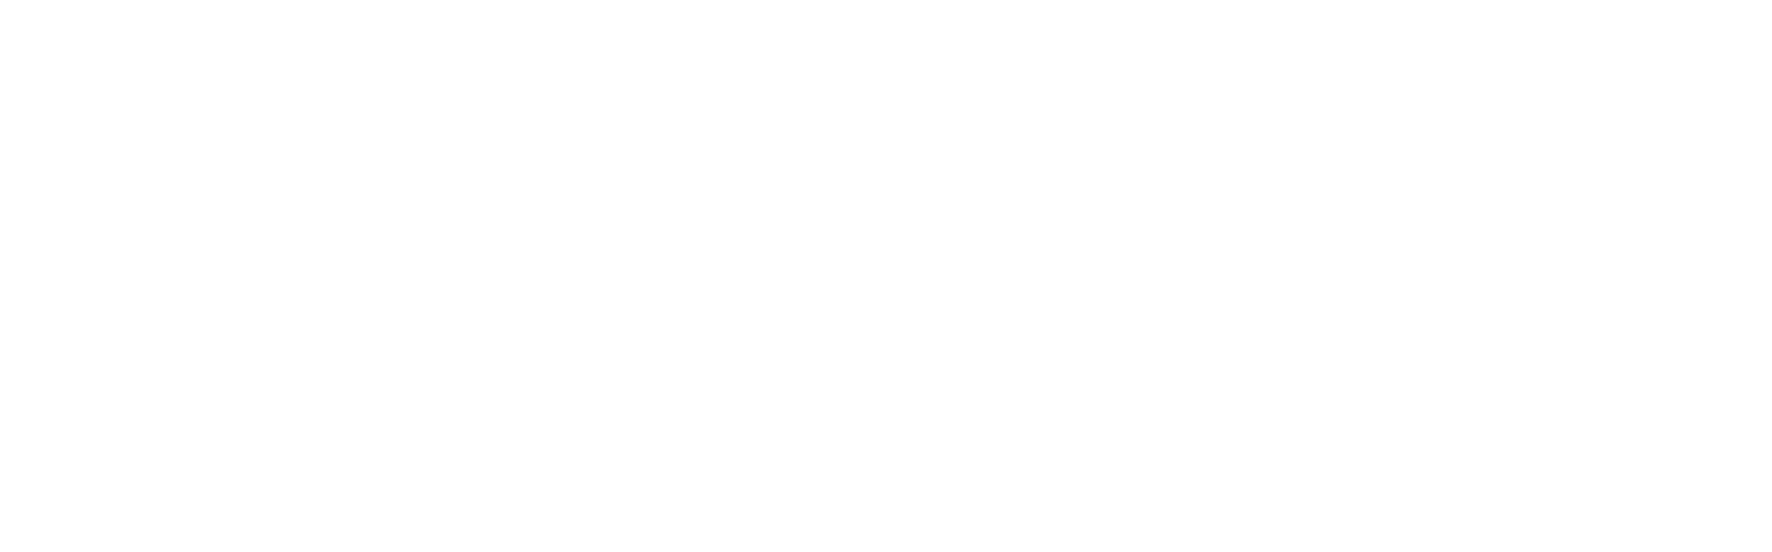 Fantasia2022-OfficialSelection-EN.png